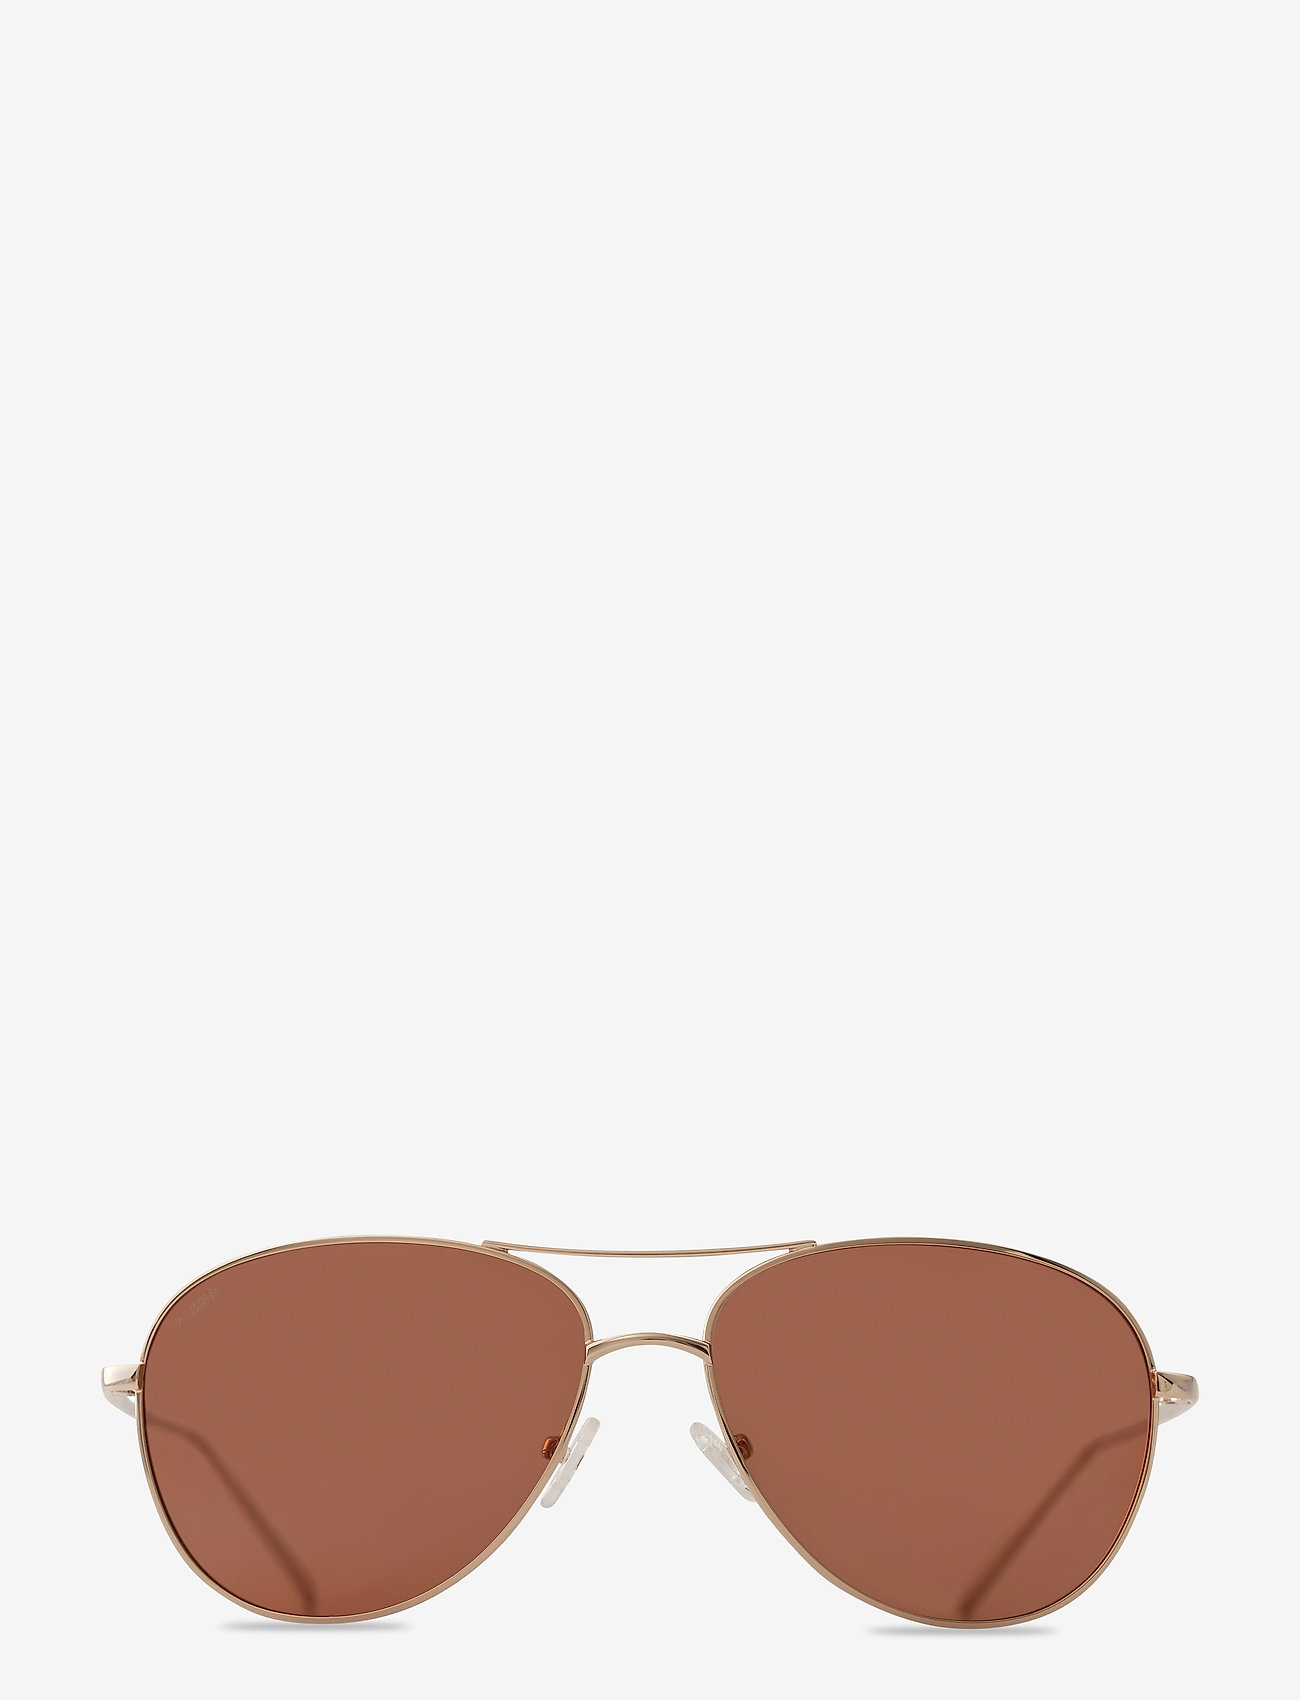 farvning buket Stuepige Pilgrim Sunglasses Nani - Pilot | Boozt.com